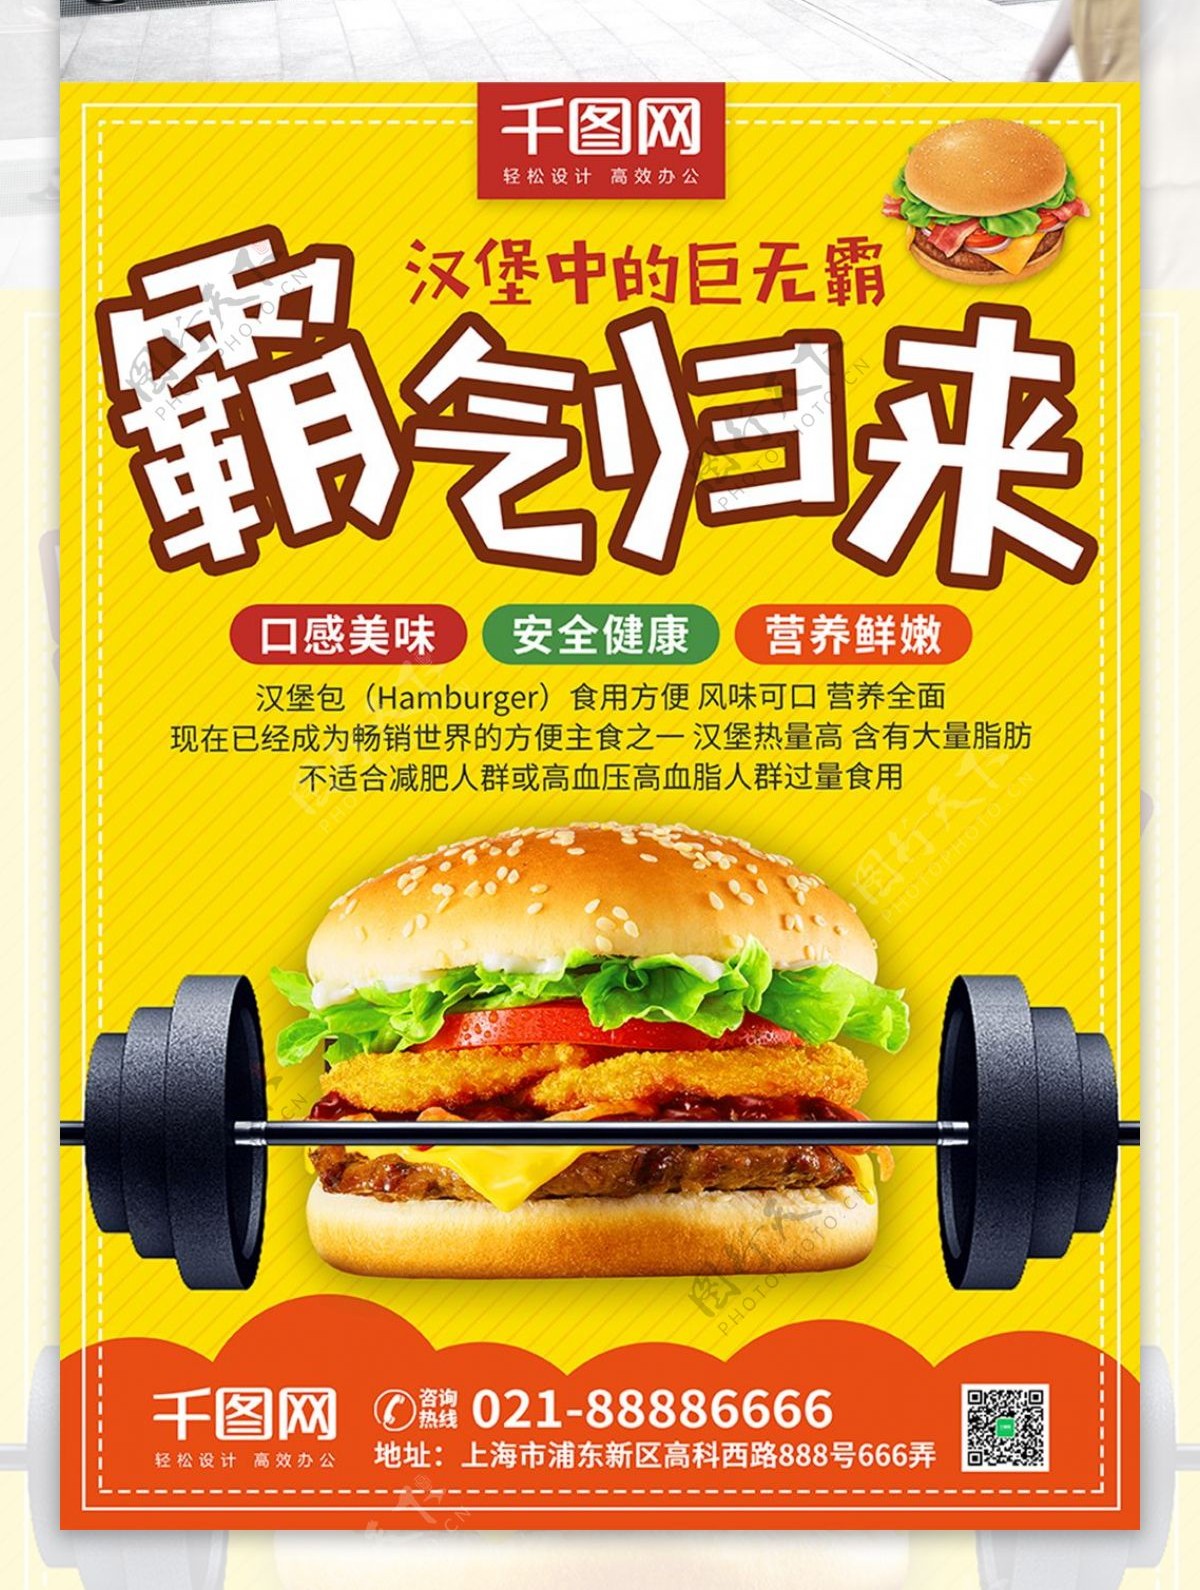 黄色简约安全健康营养汉堡包巨无霸美食海报